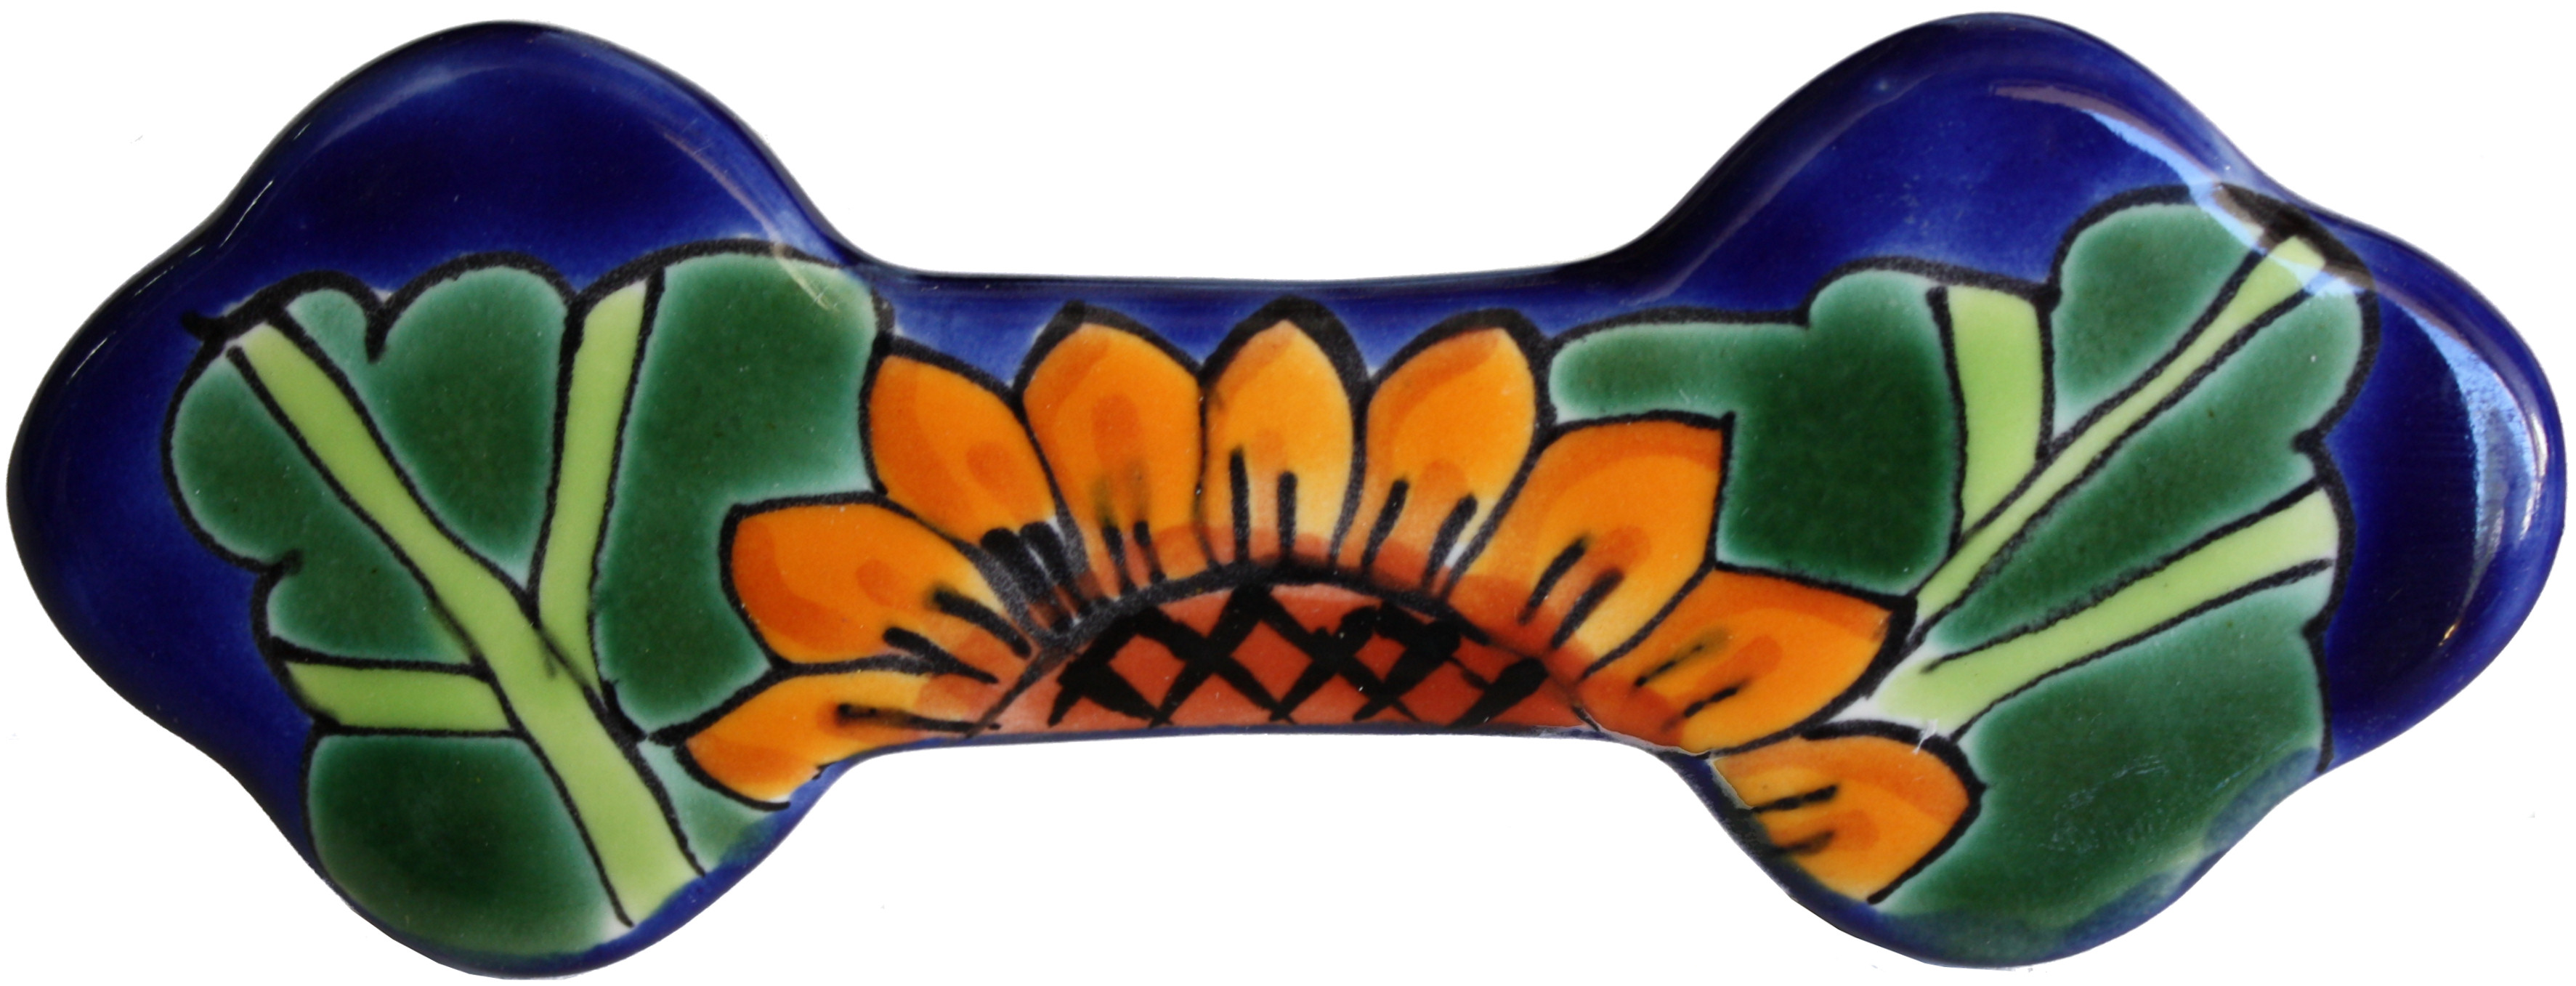 TalaMex Sunflower Talavera Ceramic Drawer Pull